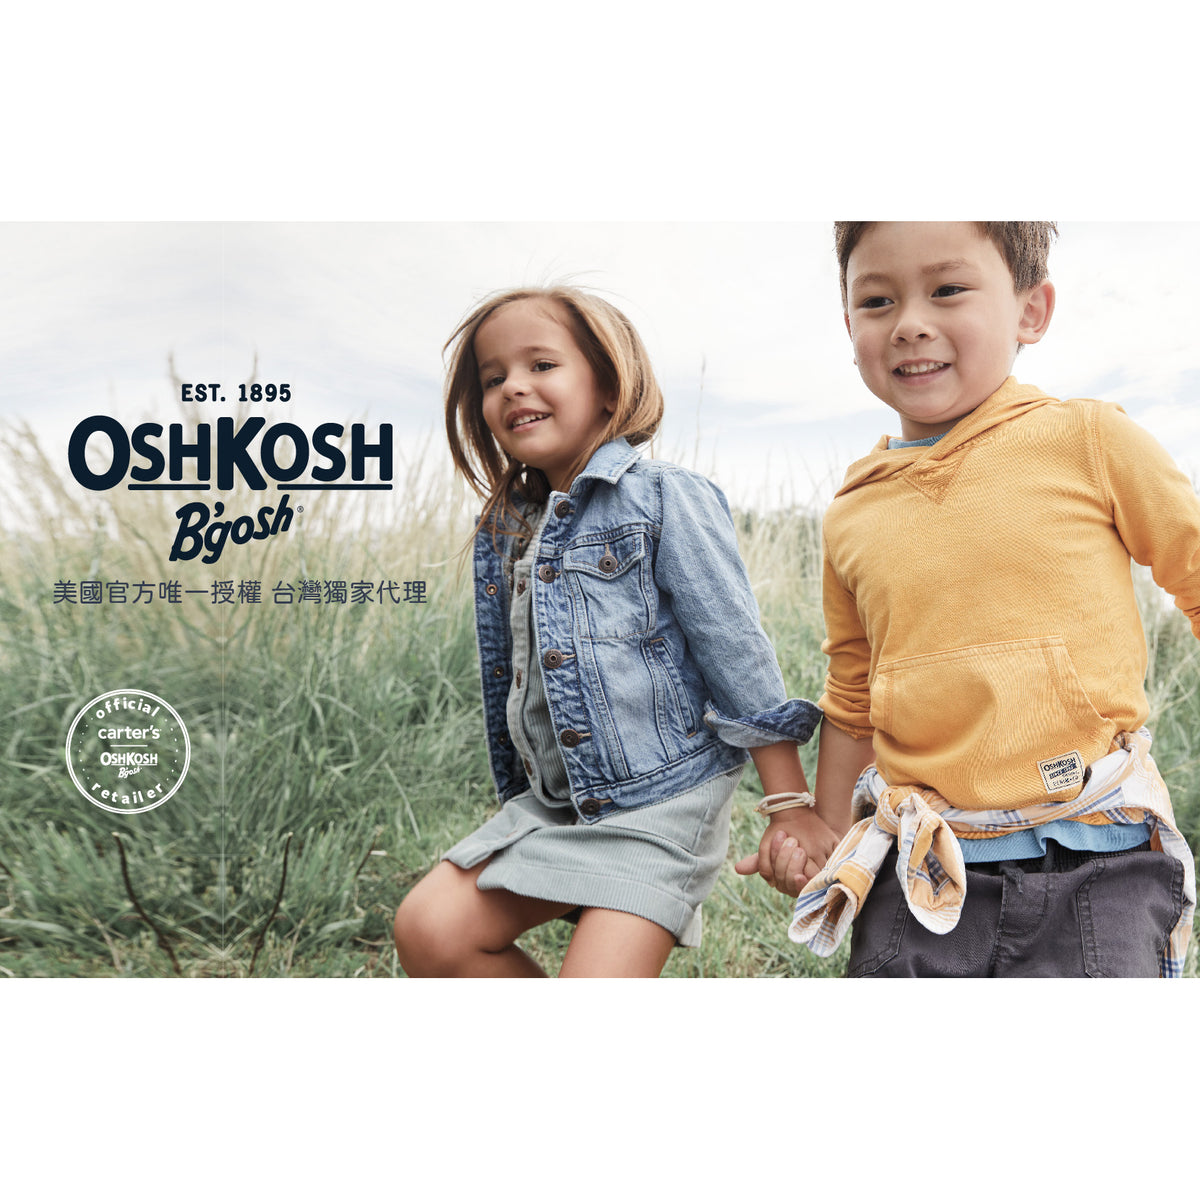 OshKosh 休閒深藍牛仔長褲(2T-5T)